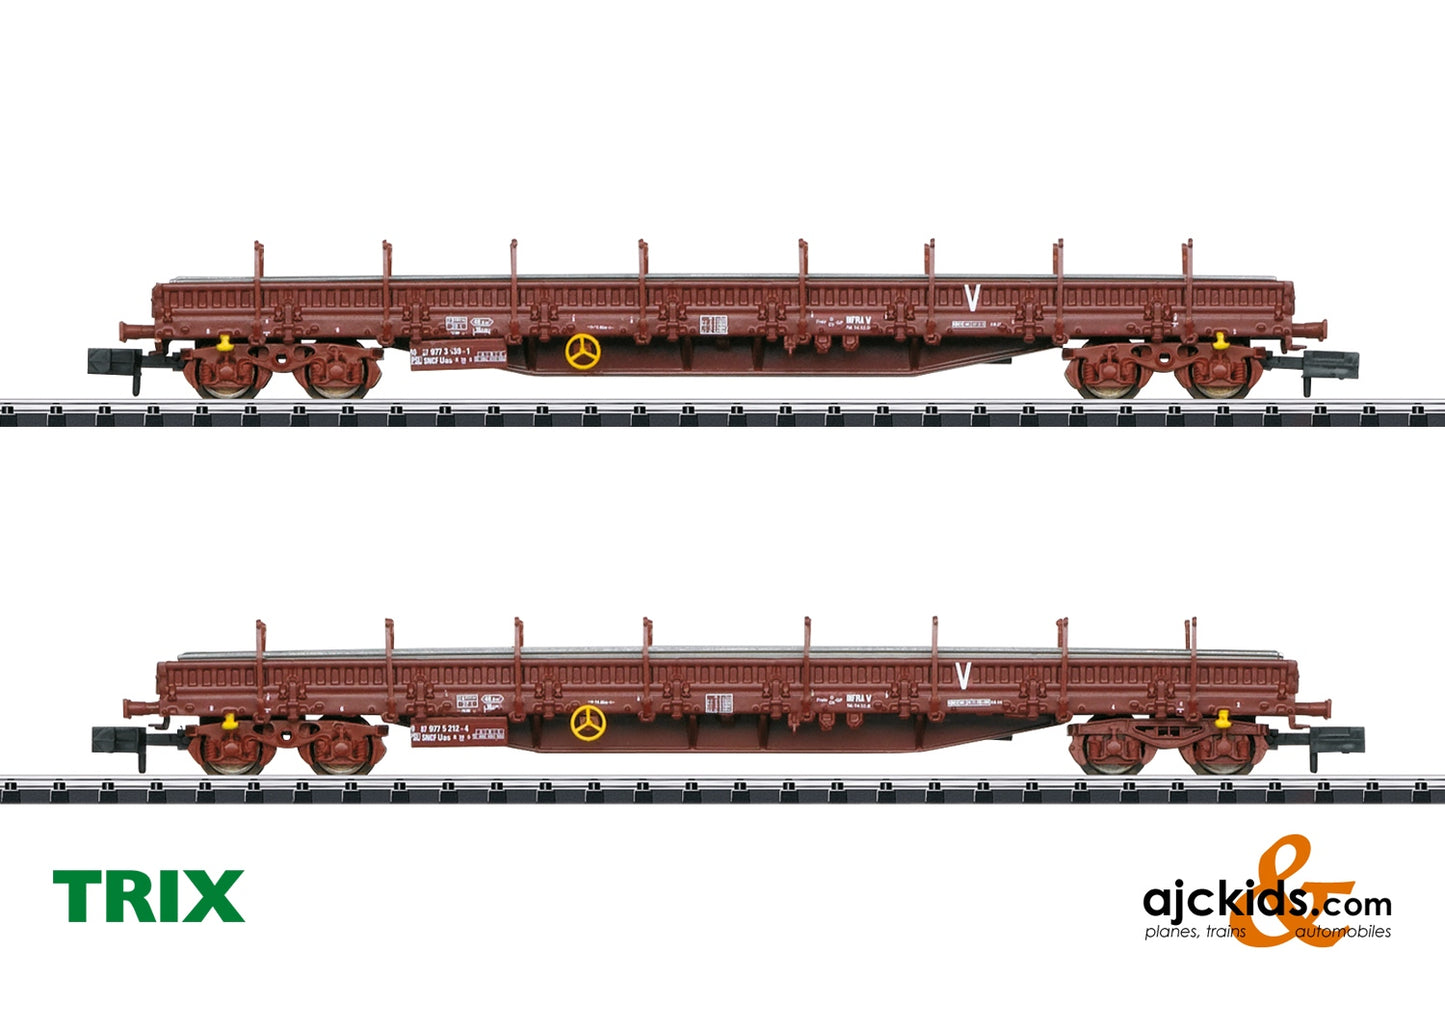 Trix 18290 - Construction Train Freight Car Set